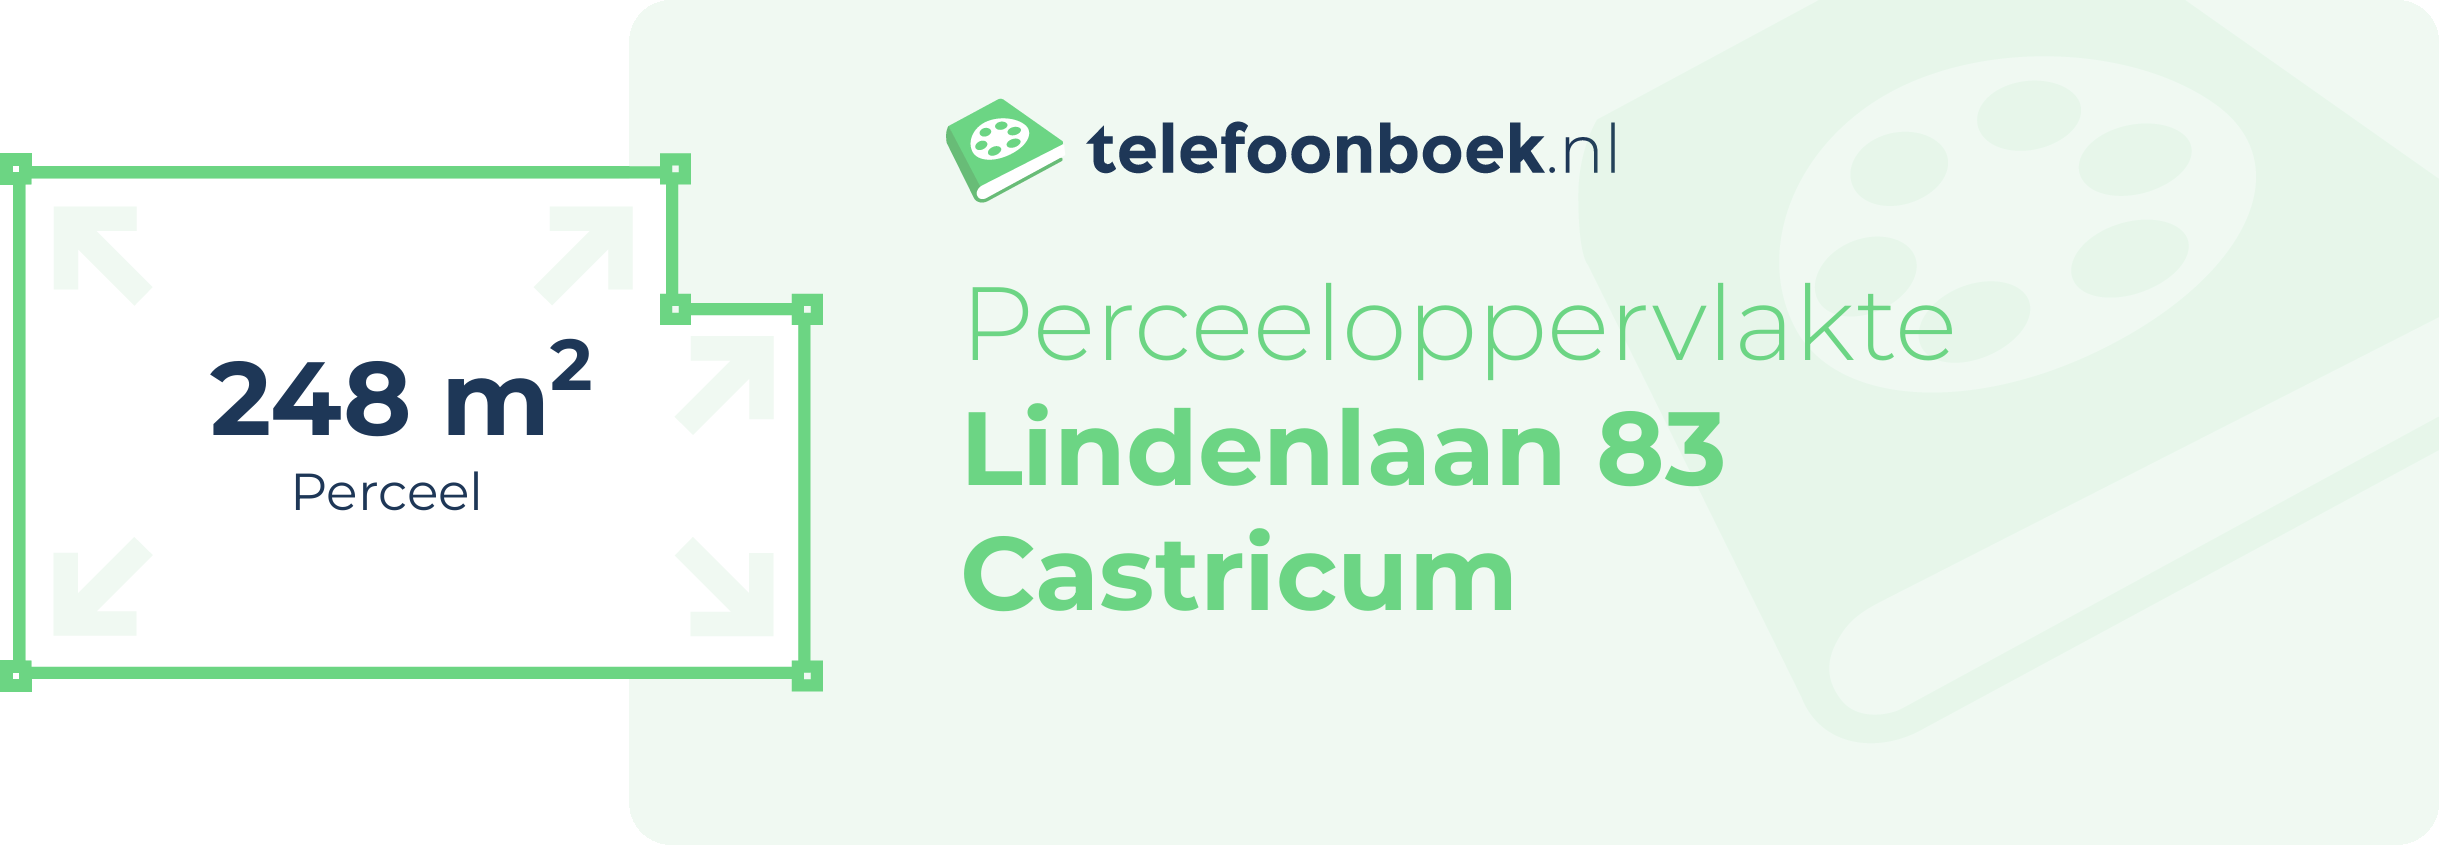 Perceeloppervlakte Lindenlaan 83 Castricum